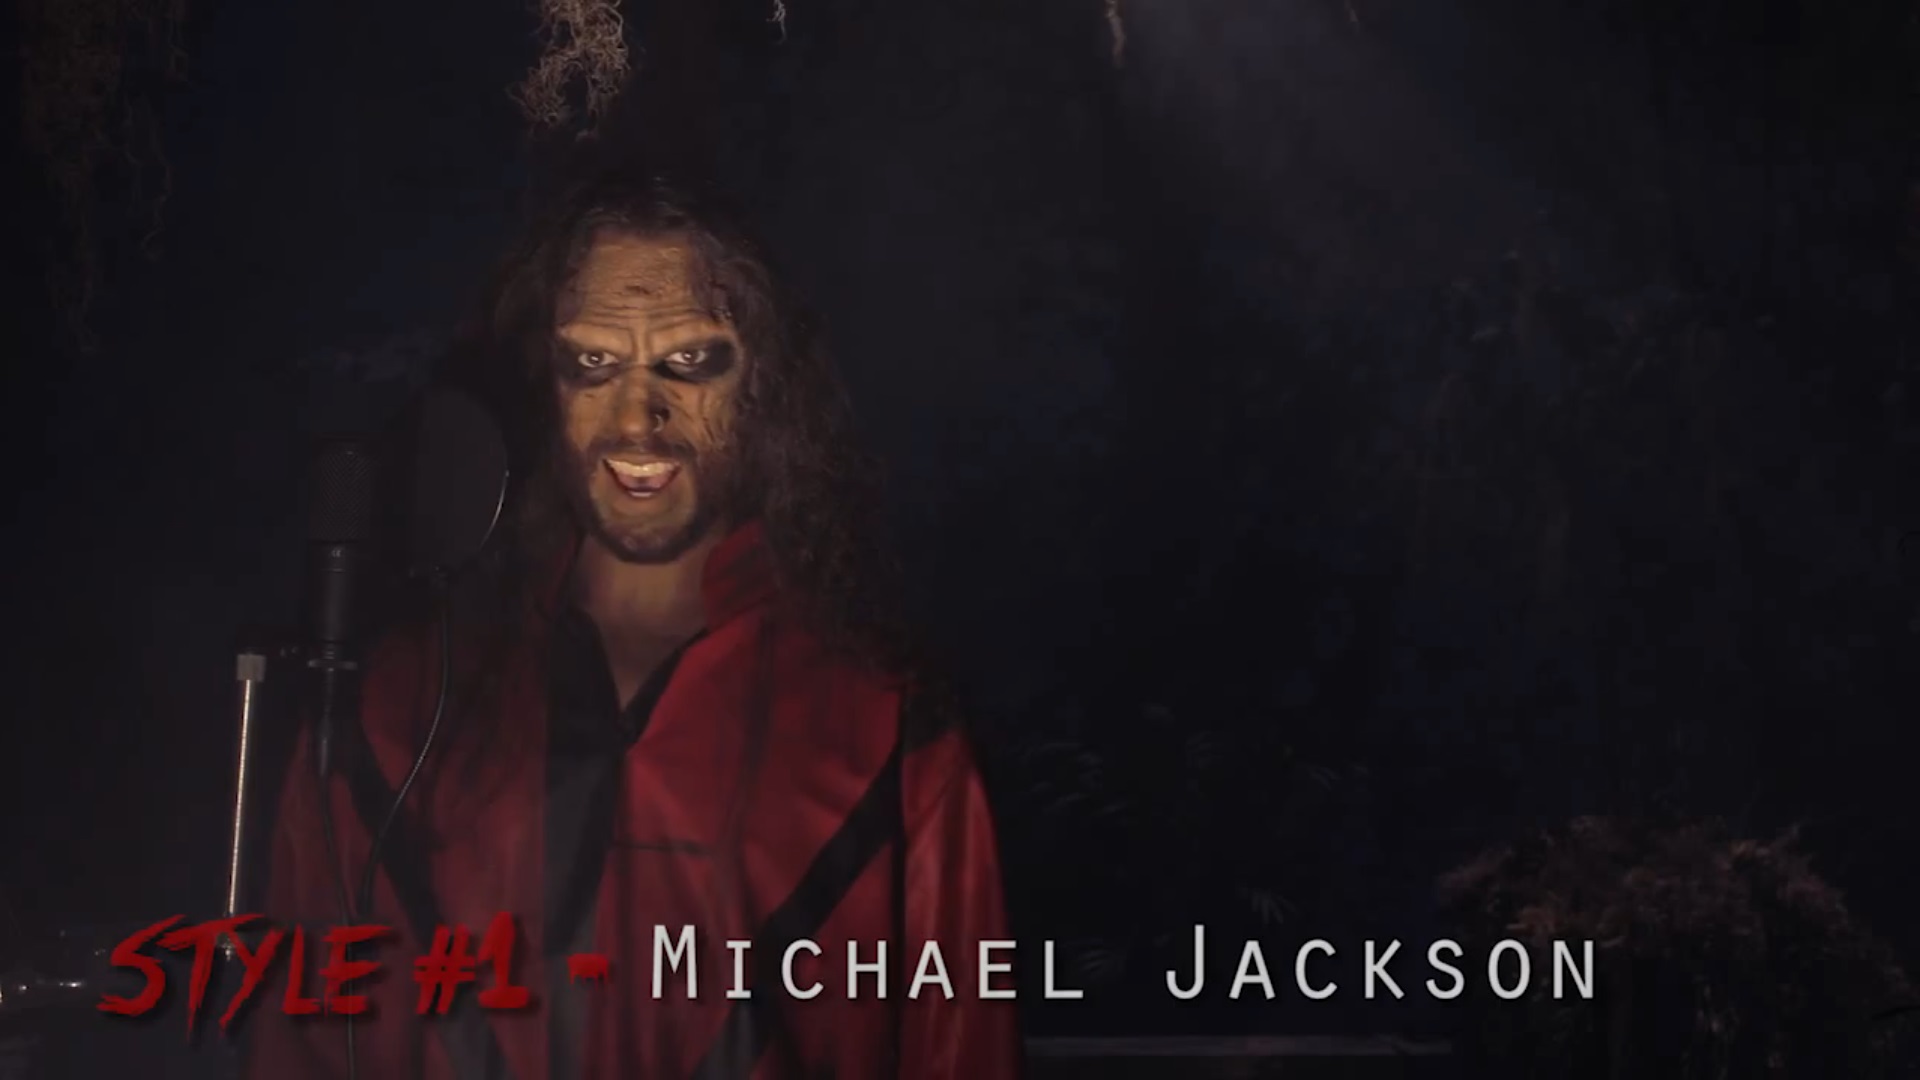 Хит Майкла Джексона "Thriller" в 20-ти различных музыкальных стилях 